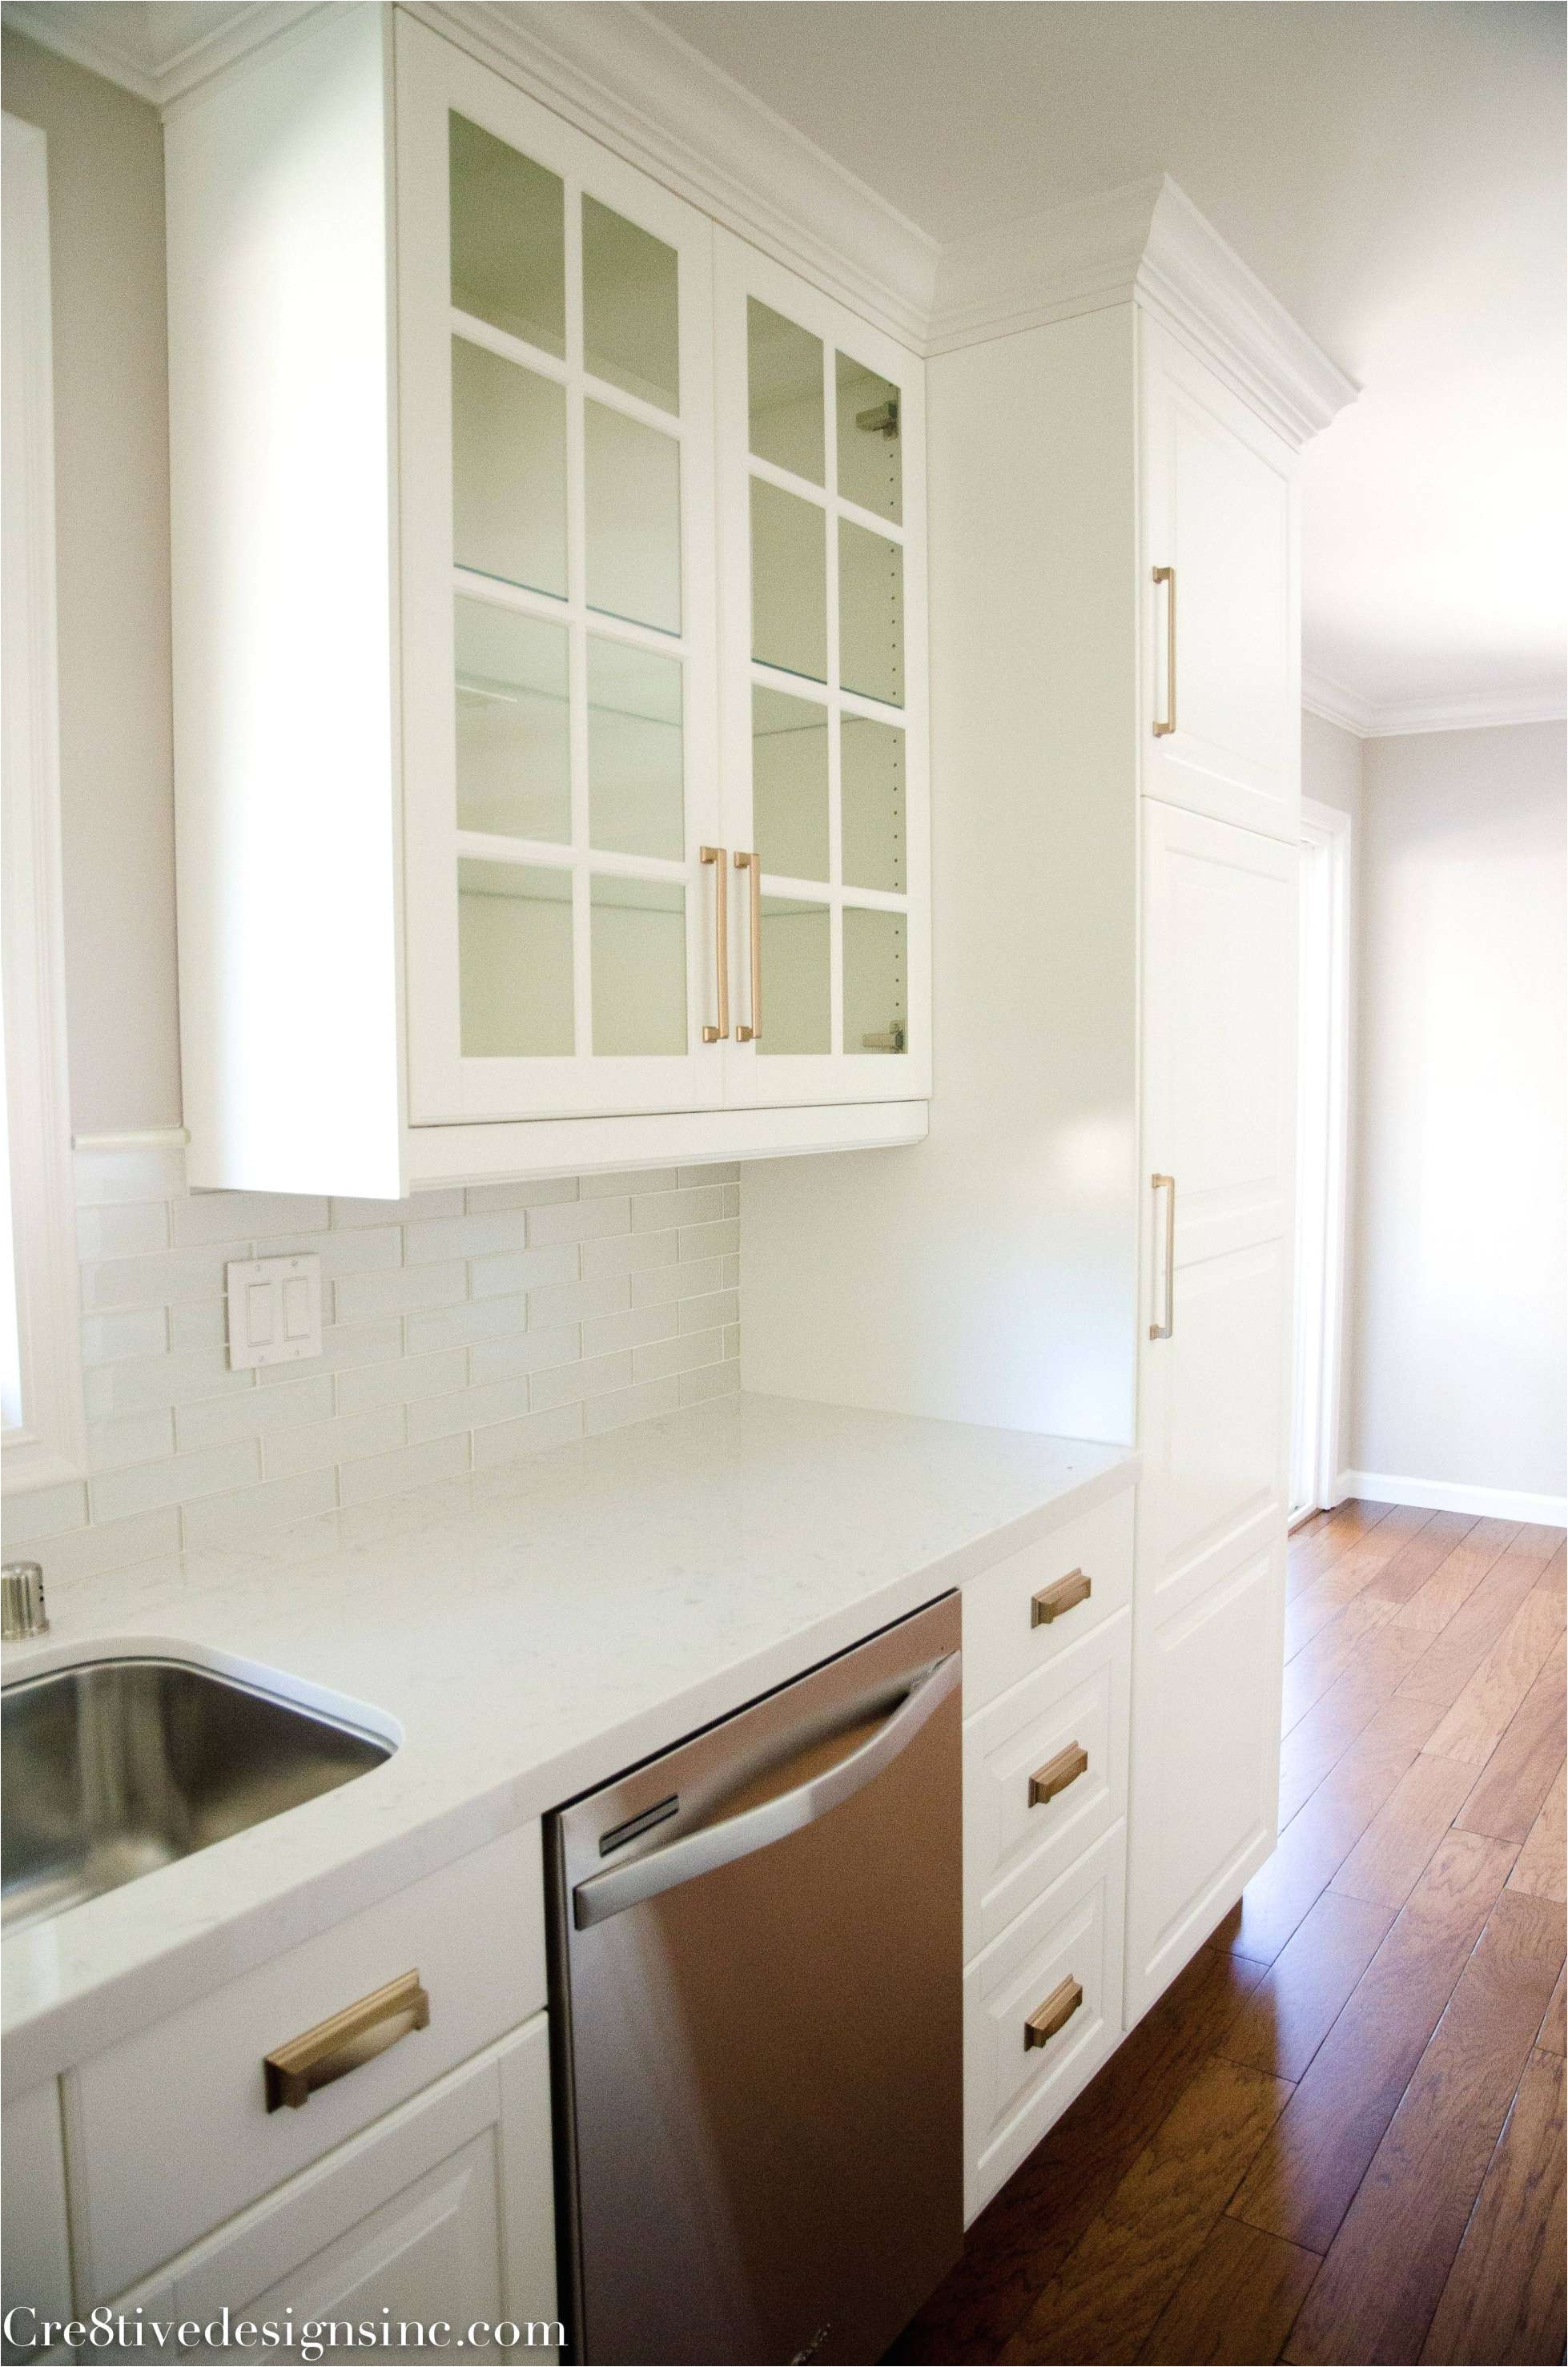 Kitchen Redesign Ideas Kitchen Design Fresh Samples Kitchen Cabinet Doors